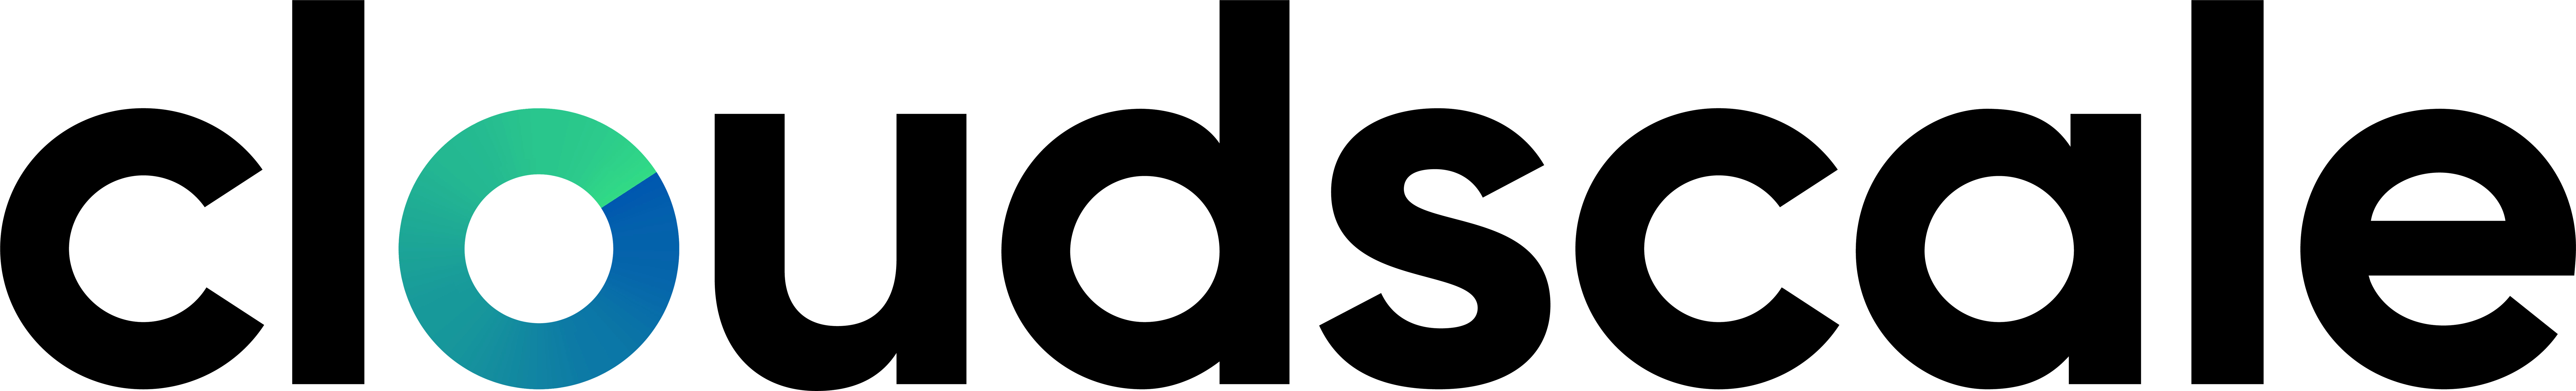 cloudscale logo